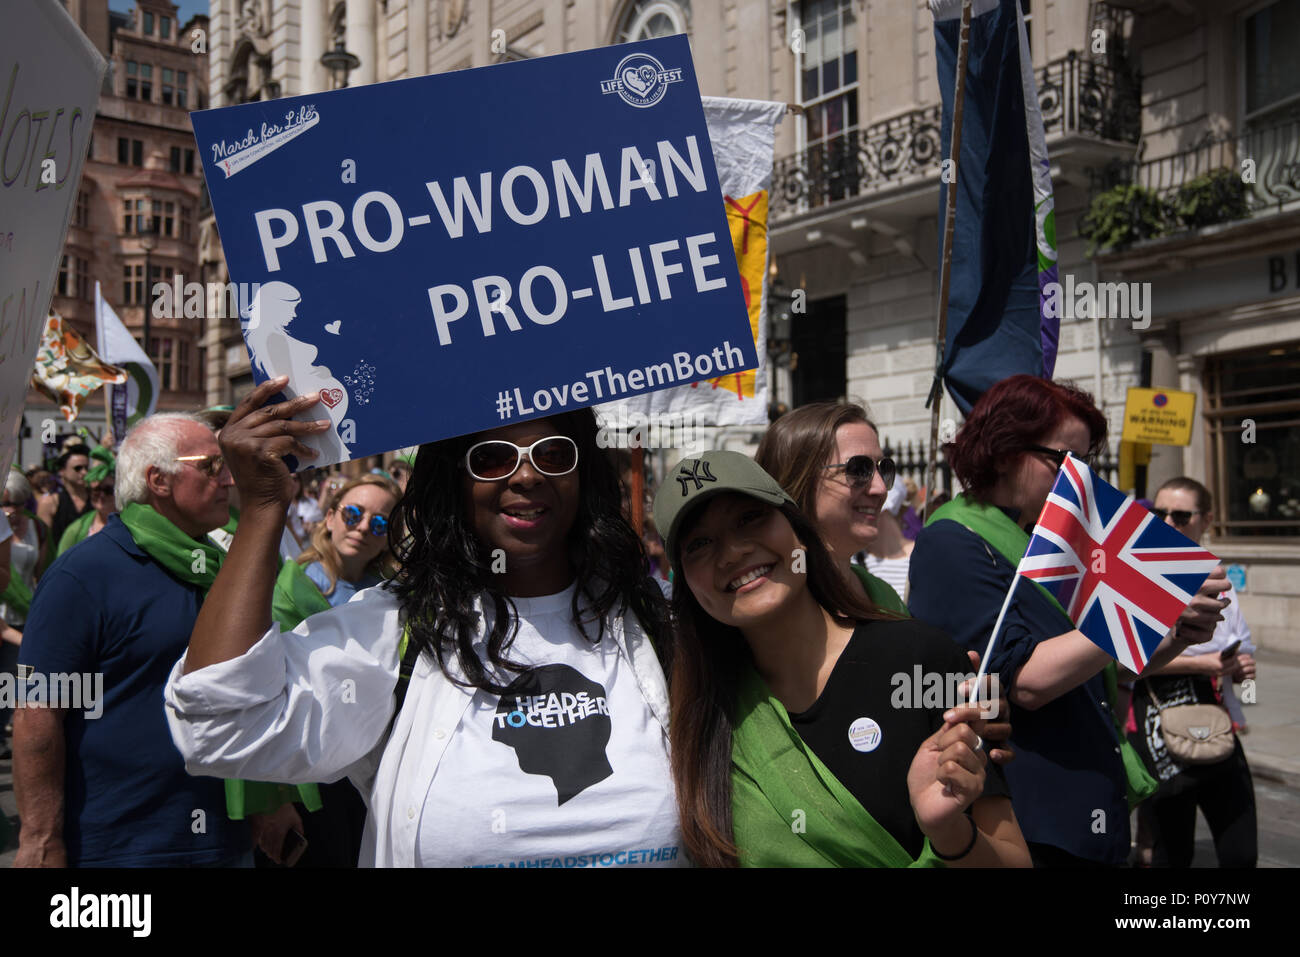 London, England, UK. 10. Juni 2018. 50:50 Zusammen mit "Prozessionen" eine Feier von 100 Jahren Frauen, die Abstimmung, März durch London zu marschieren. Credit: Siehe Li/Alamy leben Nachrichten Stockfoto